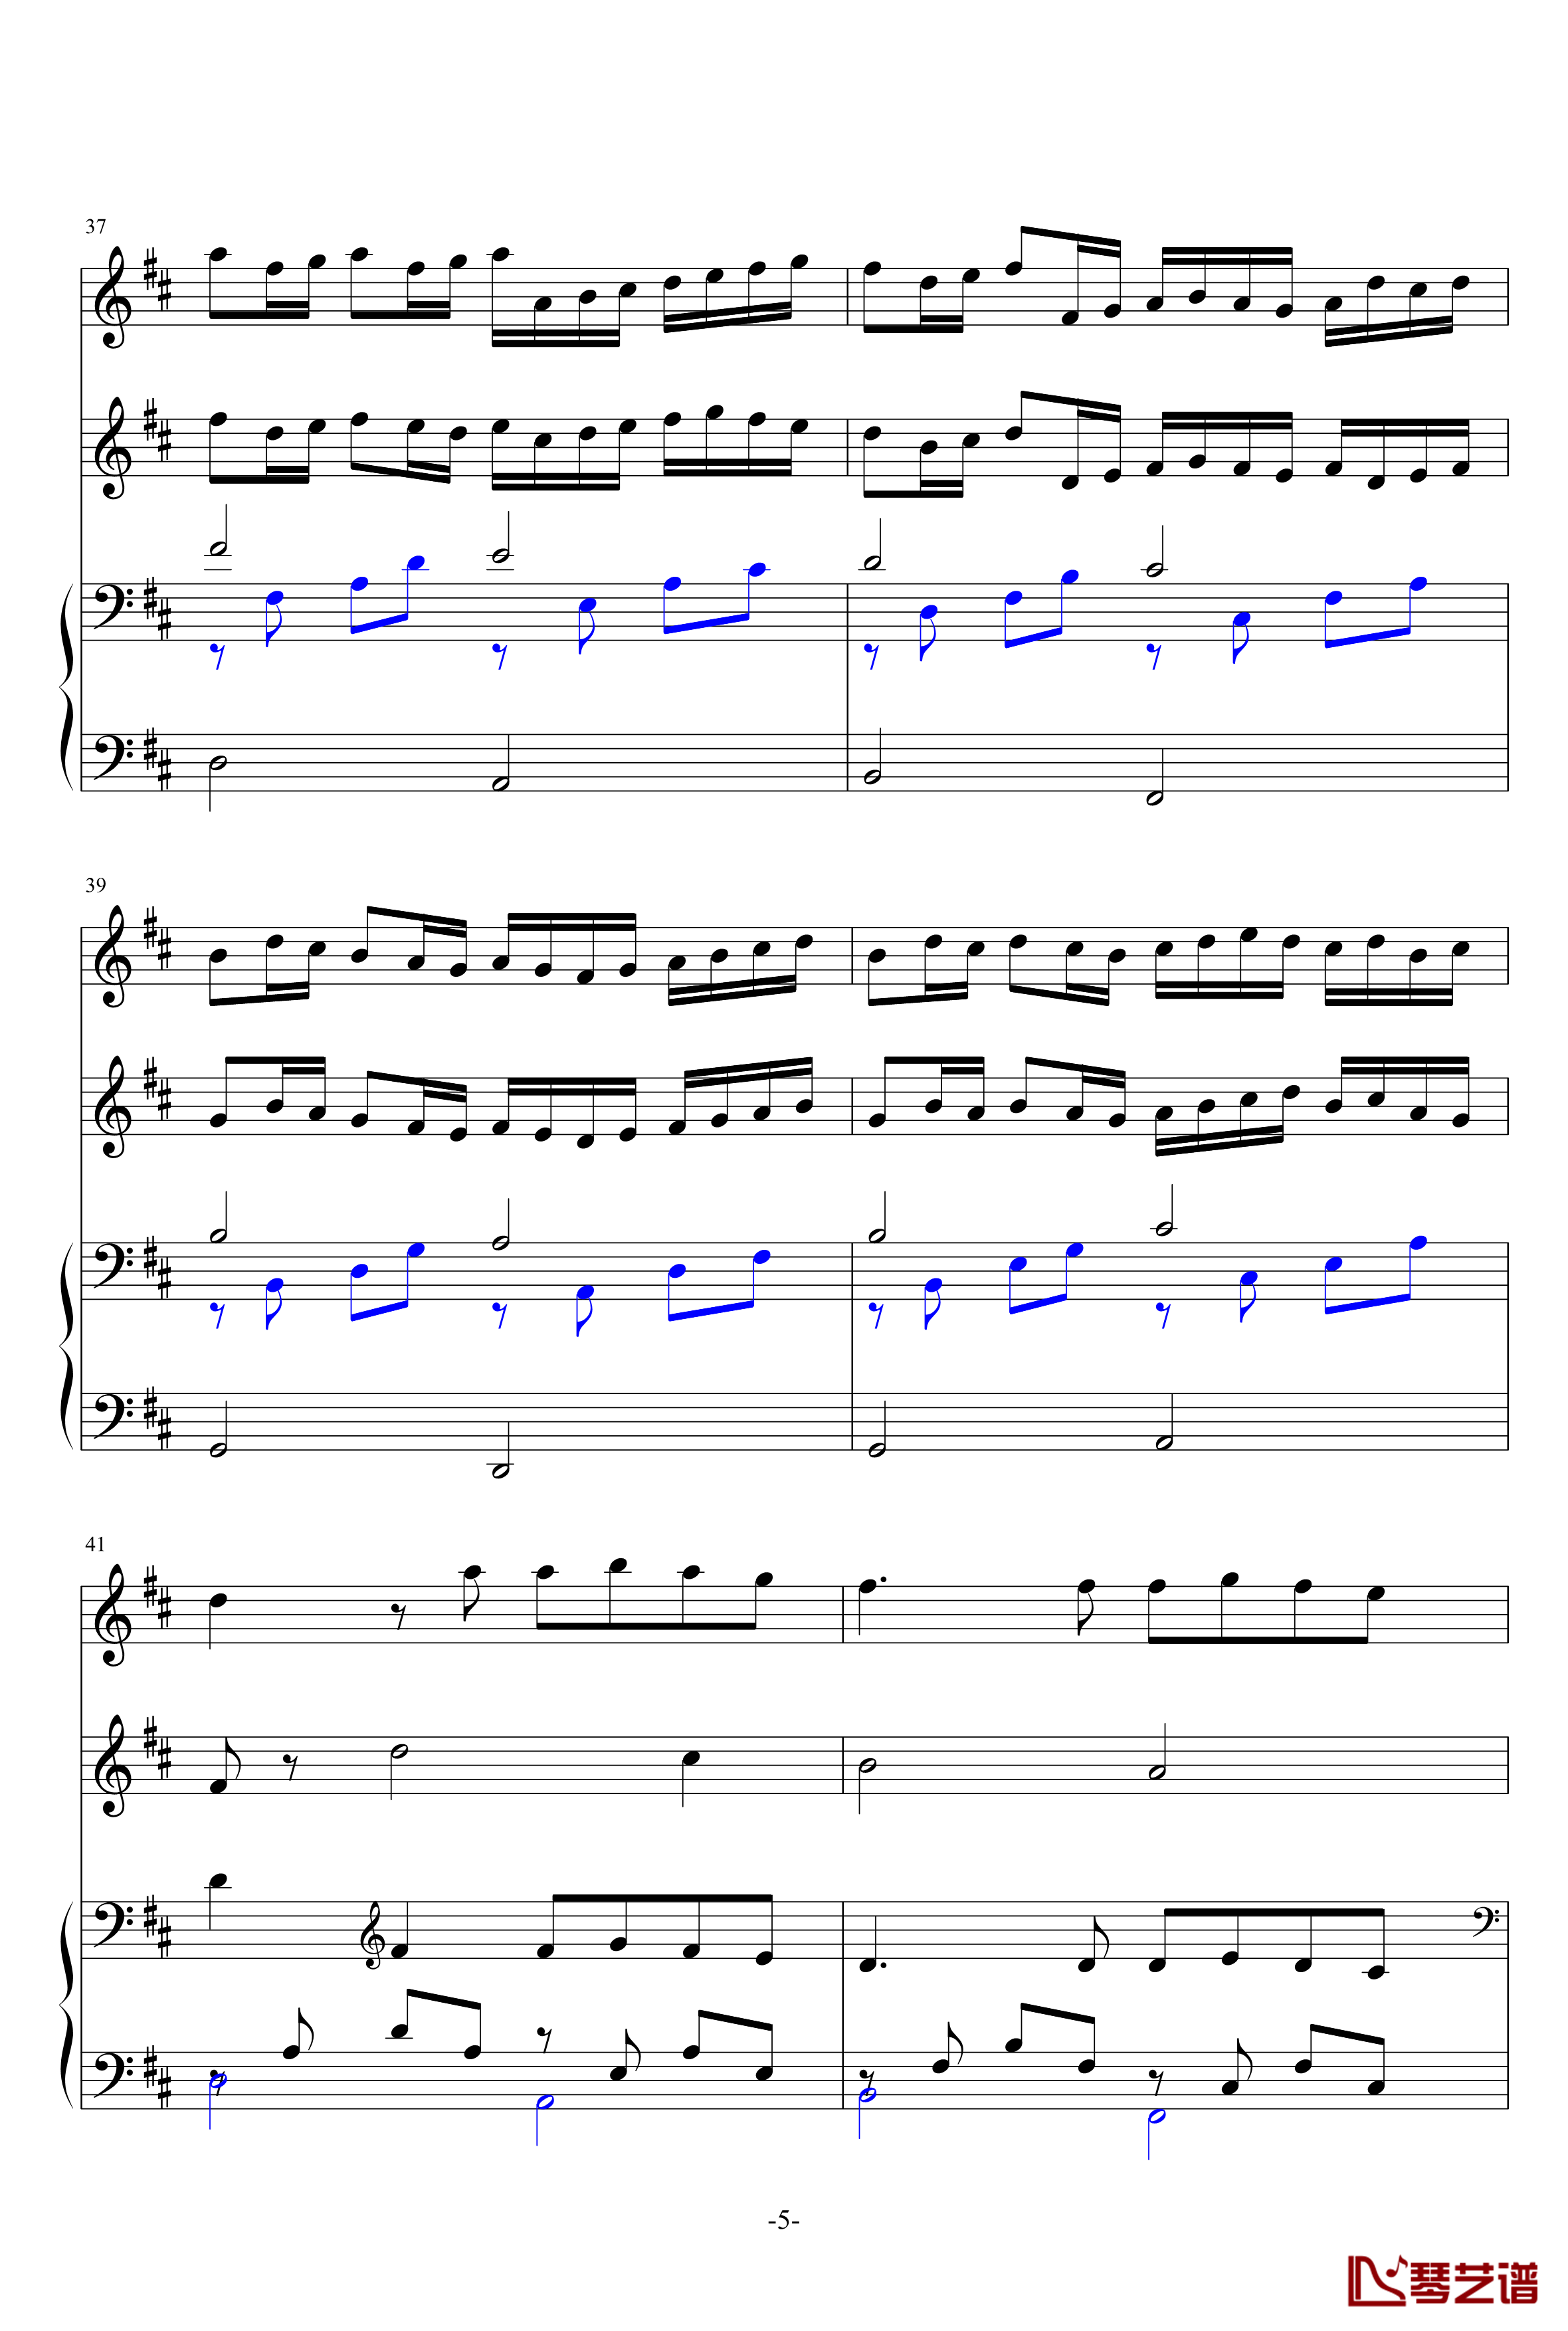 卡农提琴钢琴伴奏版钢琴谱-帕赫贝尔-Pachelbel5